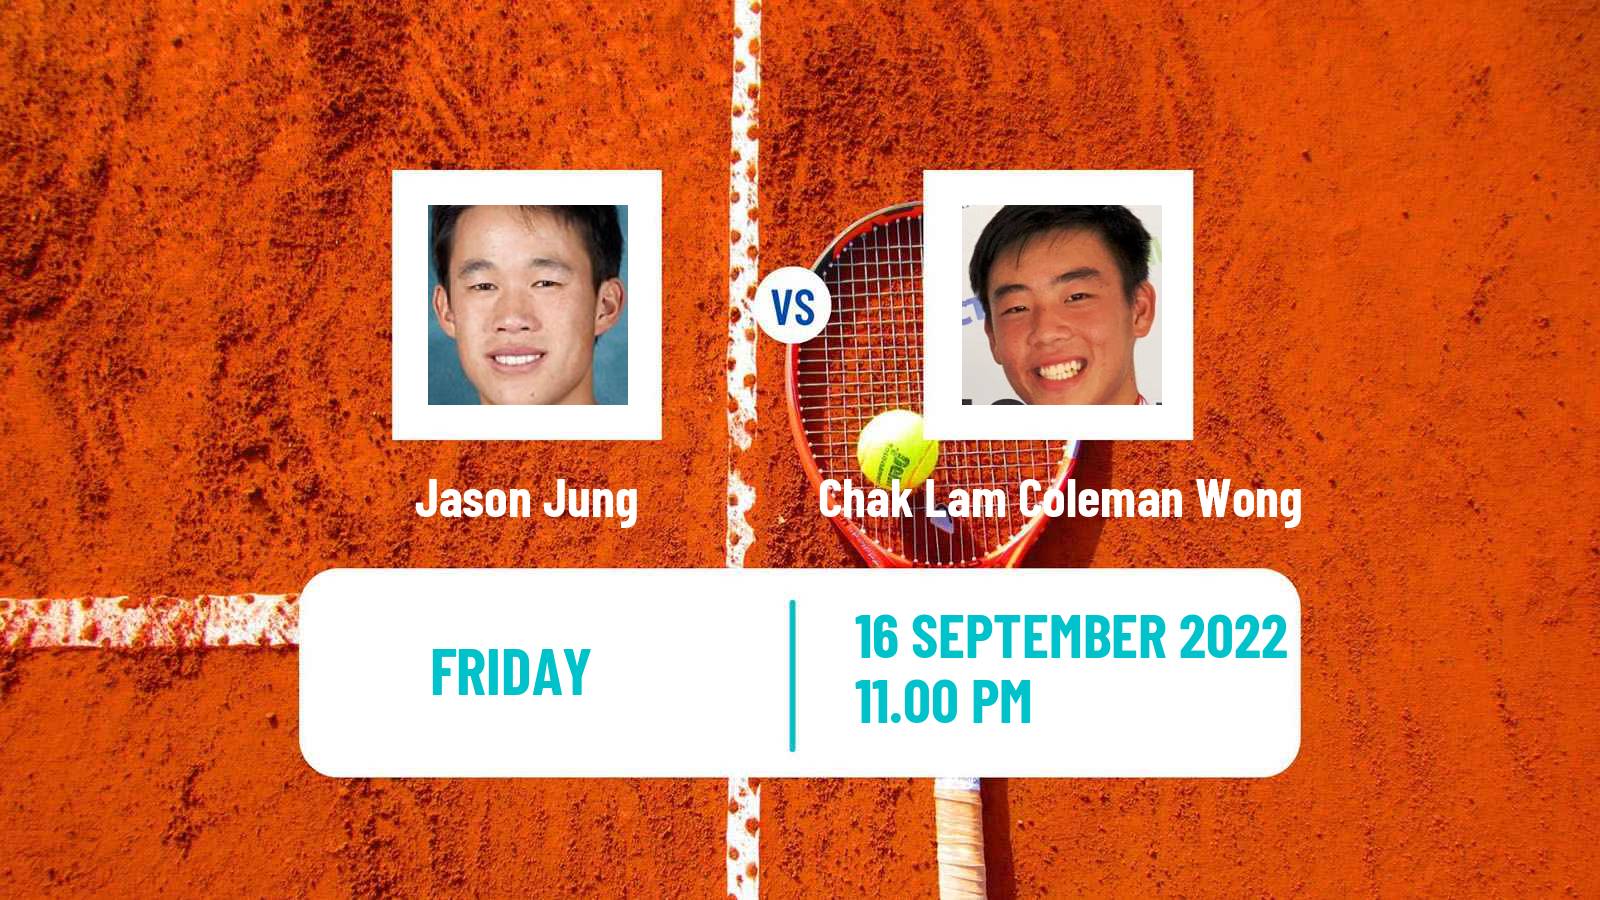 Tennis Davis Cup World Group II Jason Jung - Chak Lam Coleman Wong